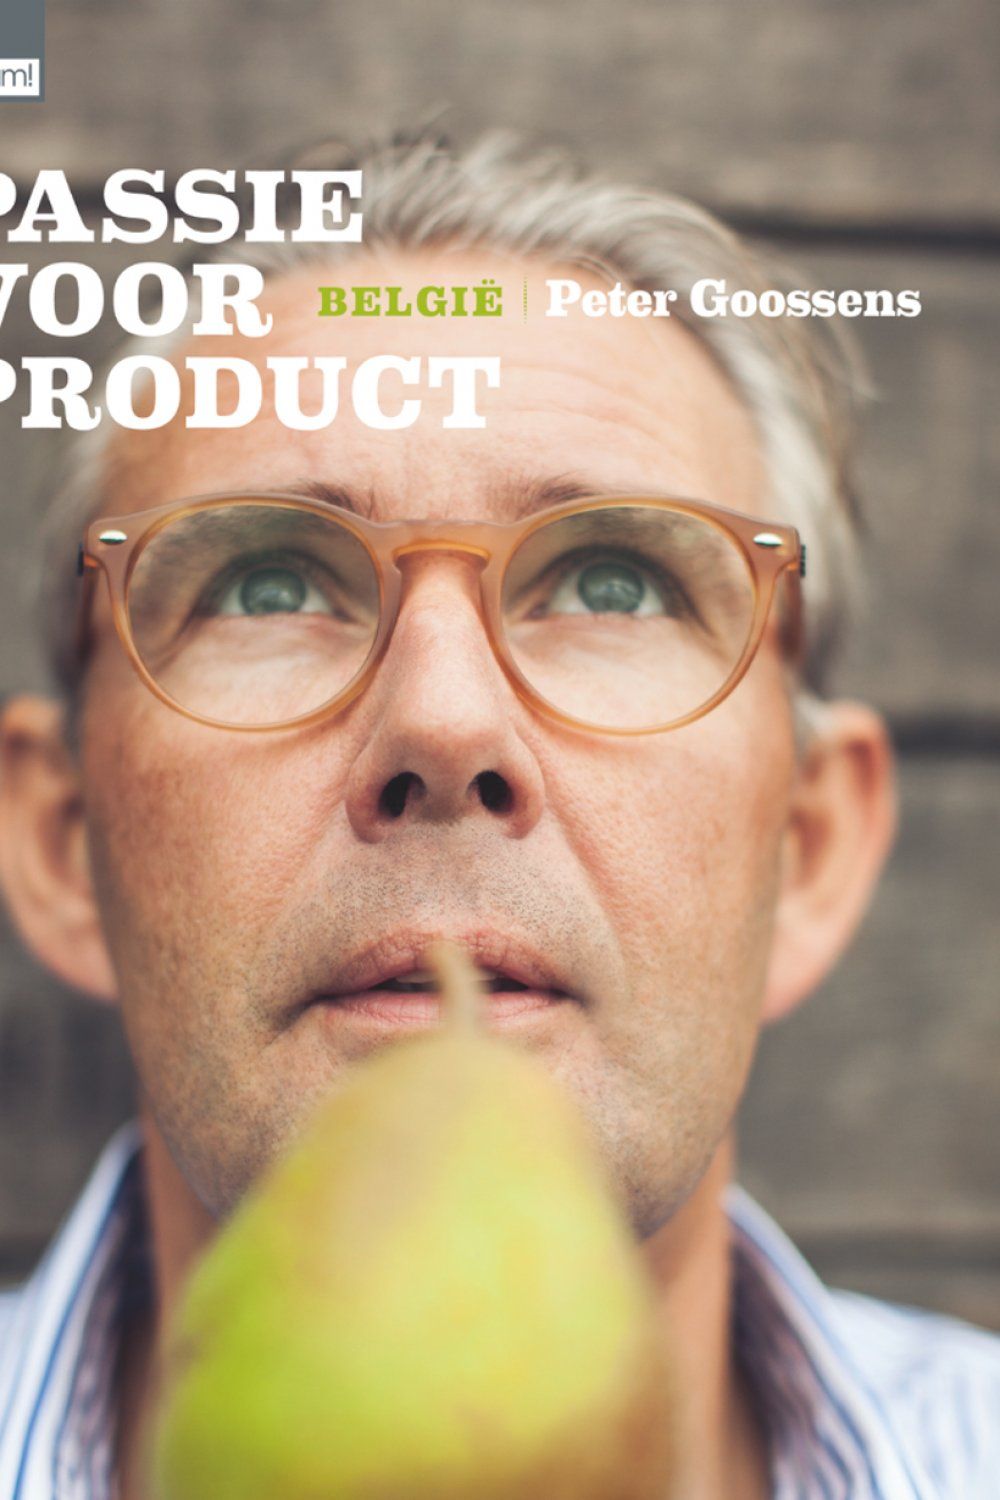 Passie voor Product: België